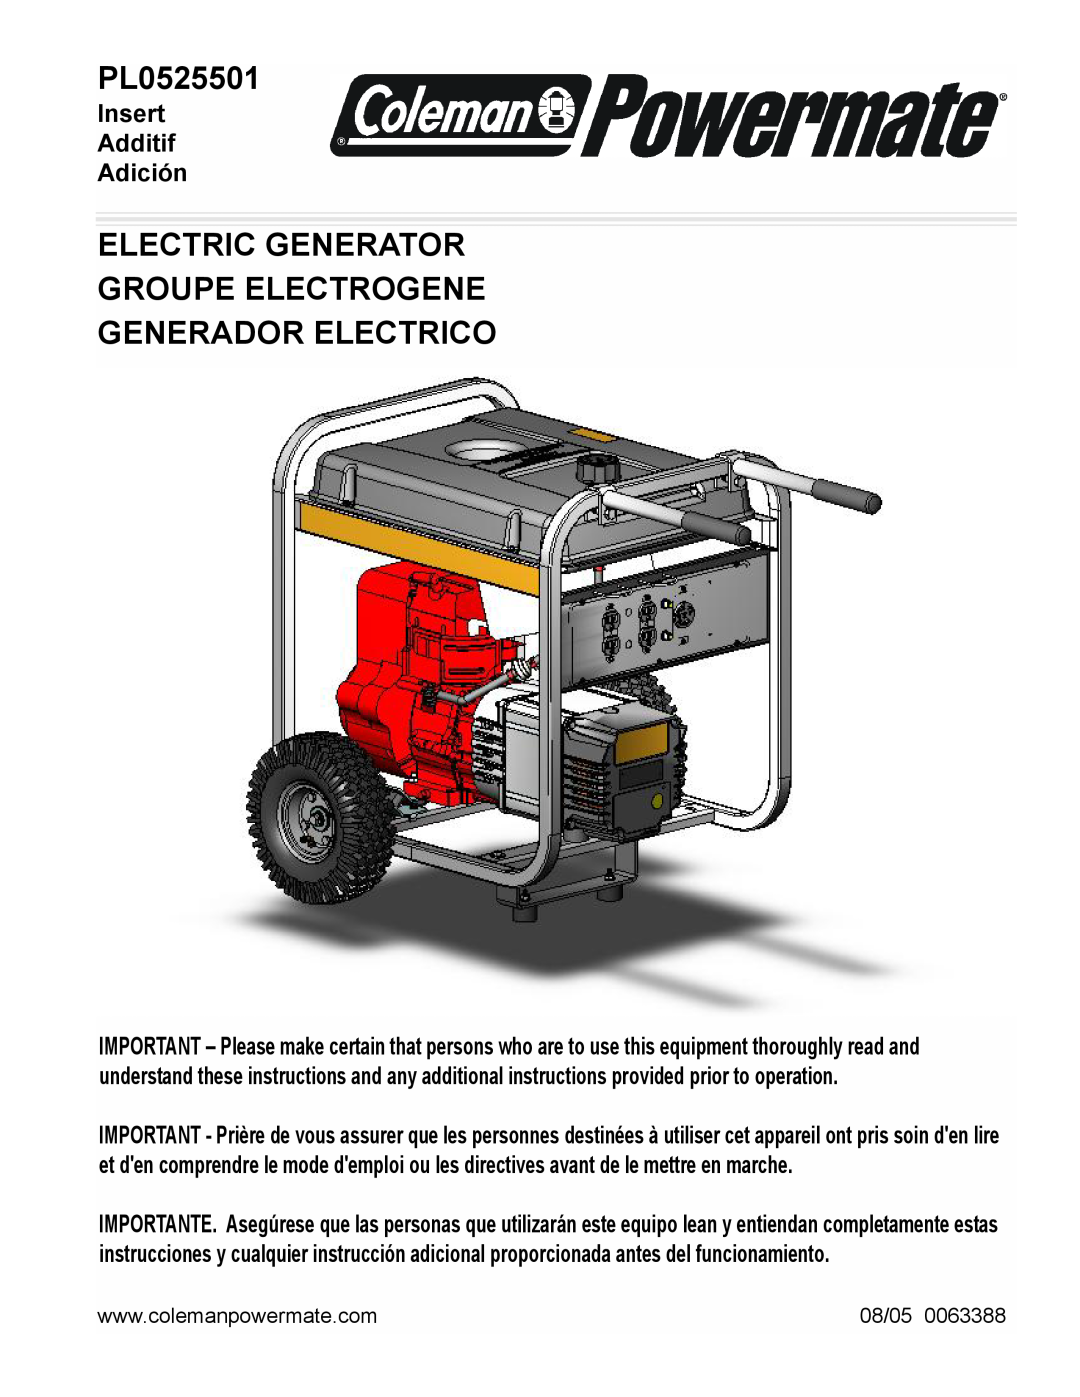 Powermate PL0525501 manual Electric Generator Groupe Electrogene, Generador Electrico, Insert Additif Adición, 08/05 